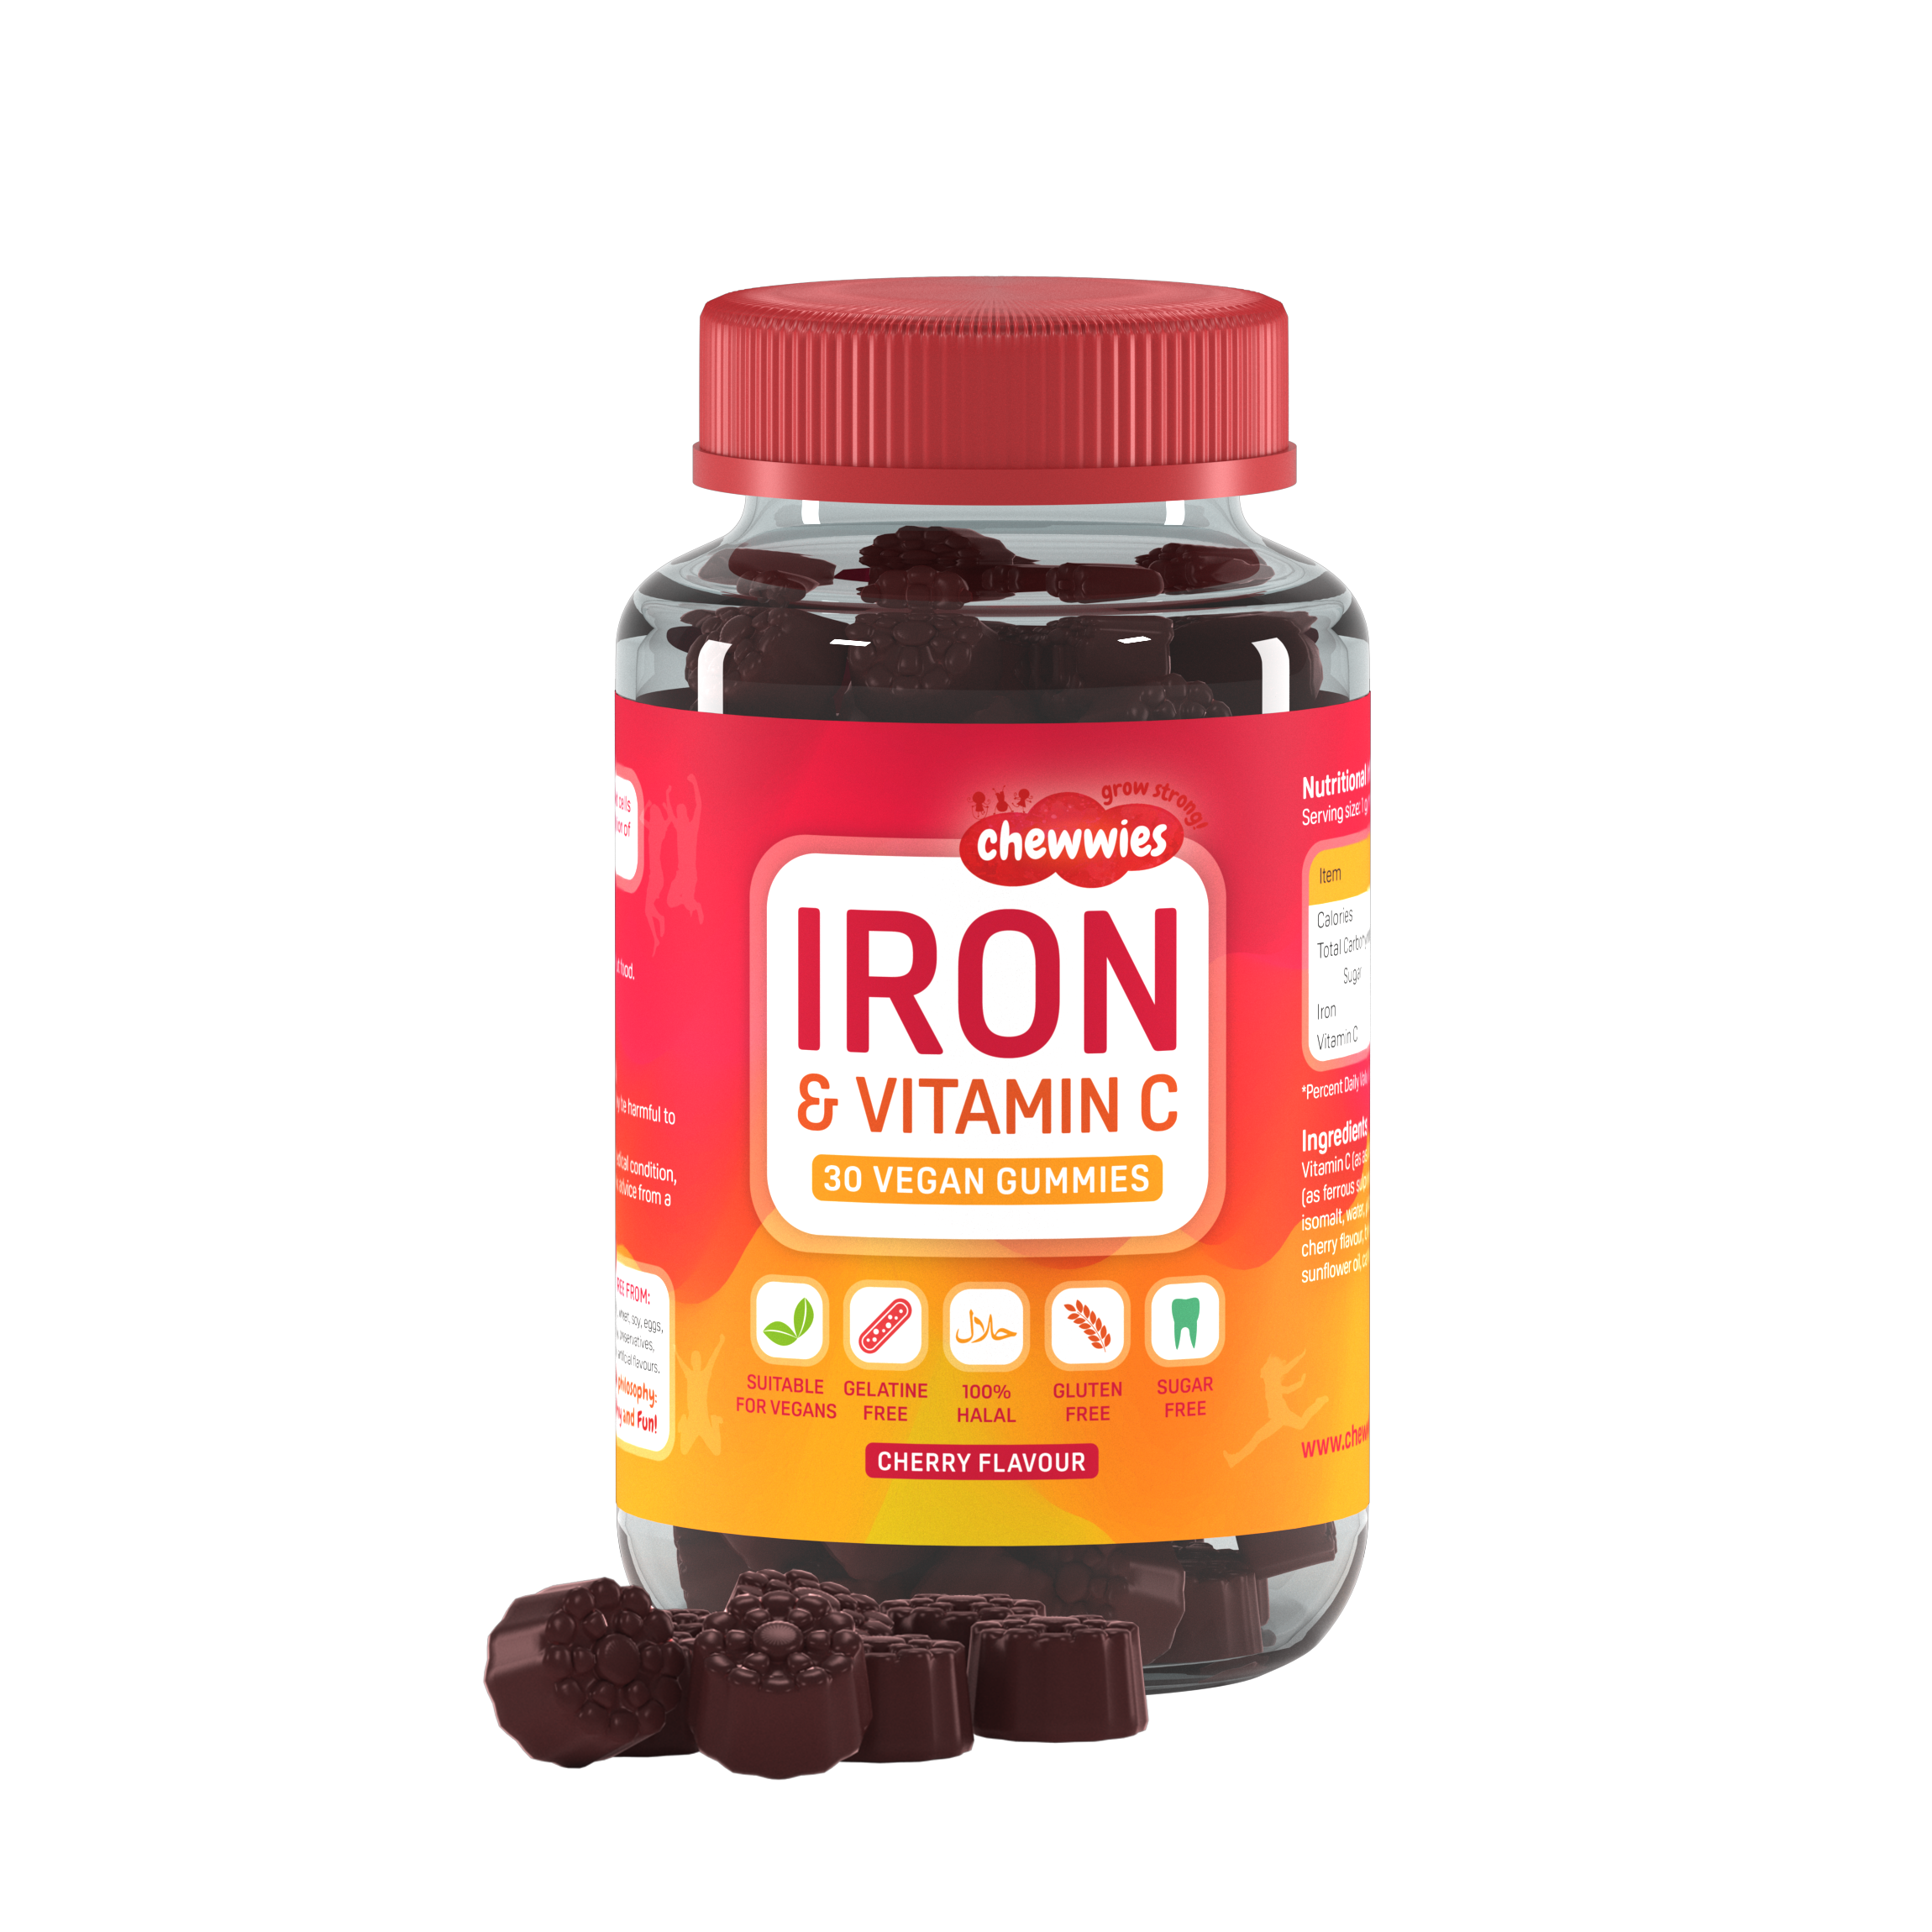 Chewwies Iron & Vitamin C, 30 gomitas veganas sin azúcar con sabor a cereza para energía y reducción del cansancio y la fatiga